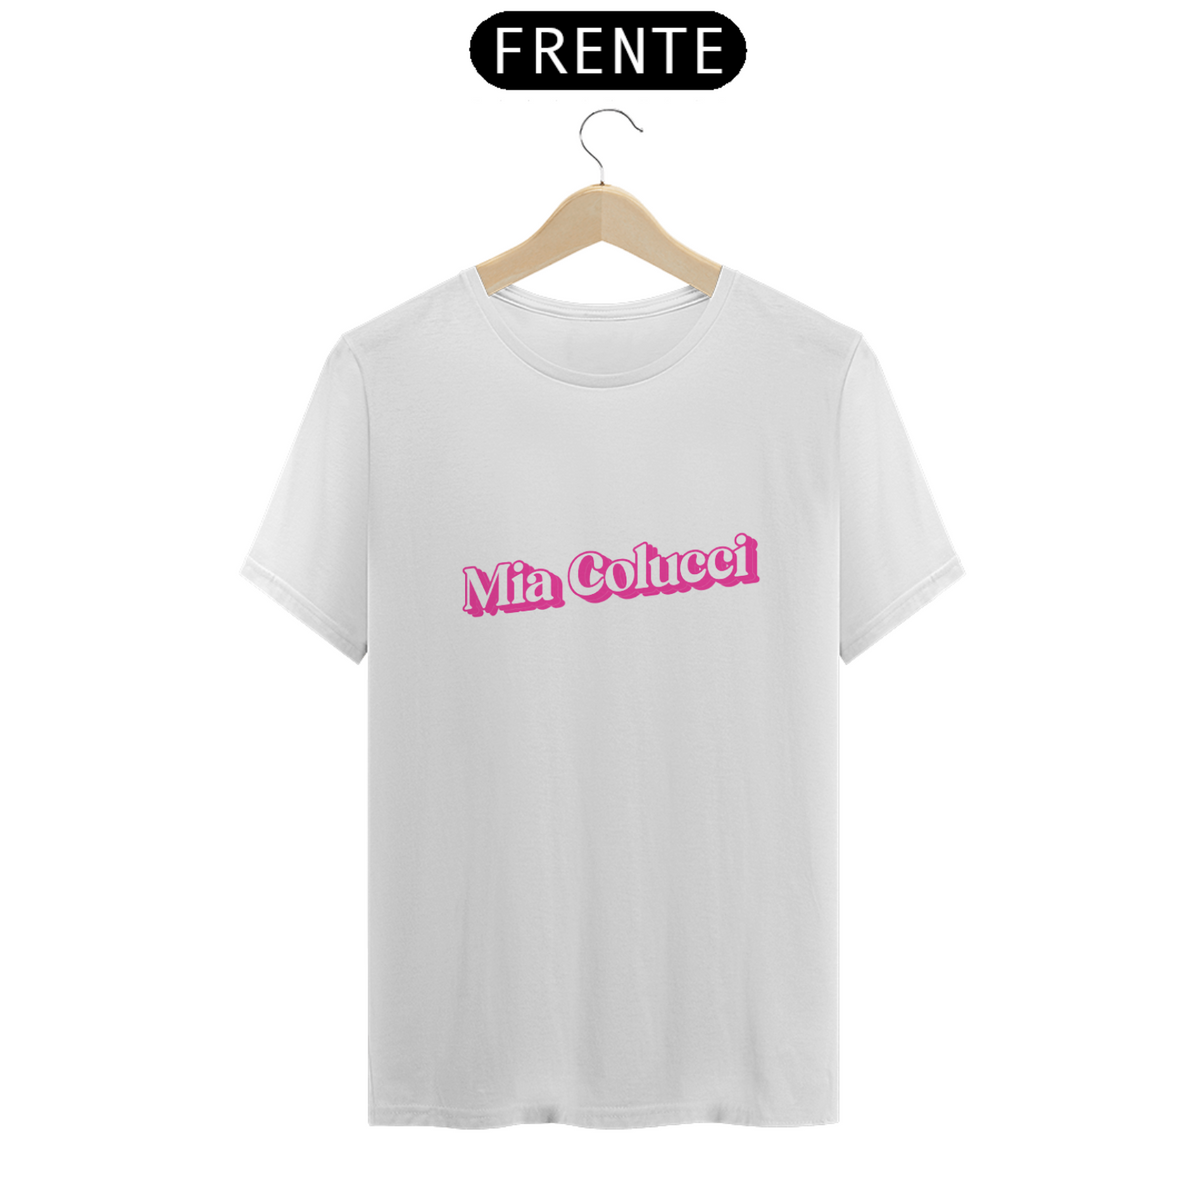 Nome do produto: Camiseta Unissex - Mia Colucci